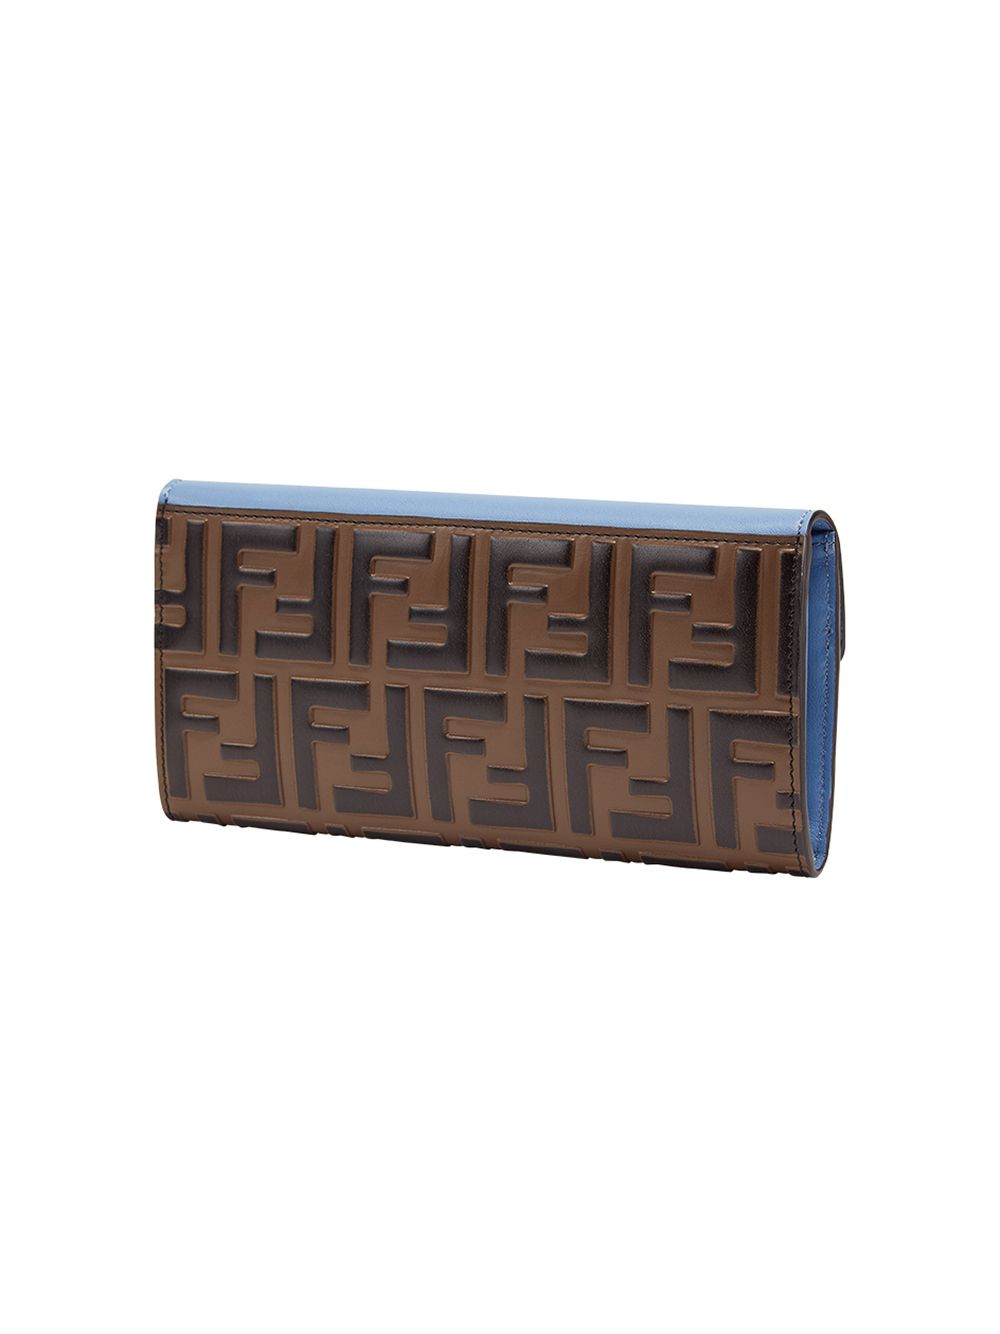 фото Fendi кошелек дизайна колор-блок